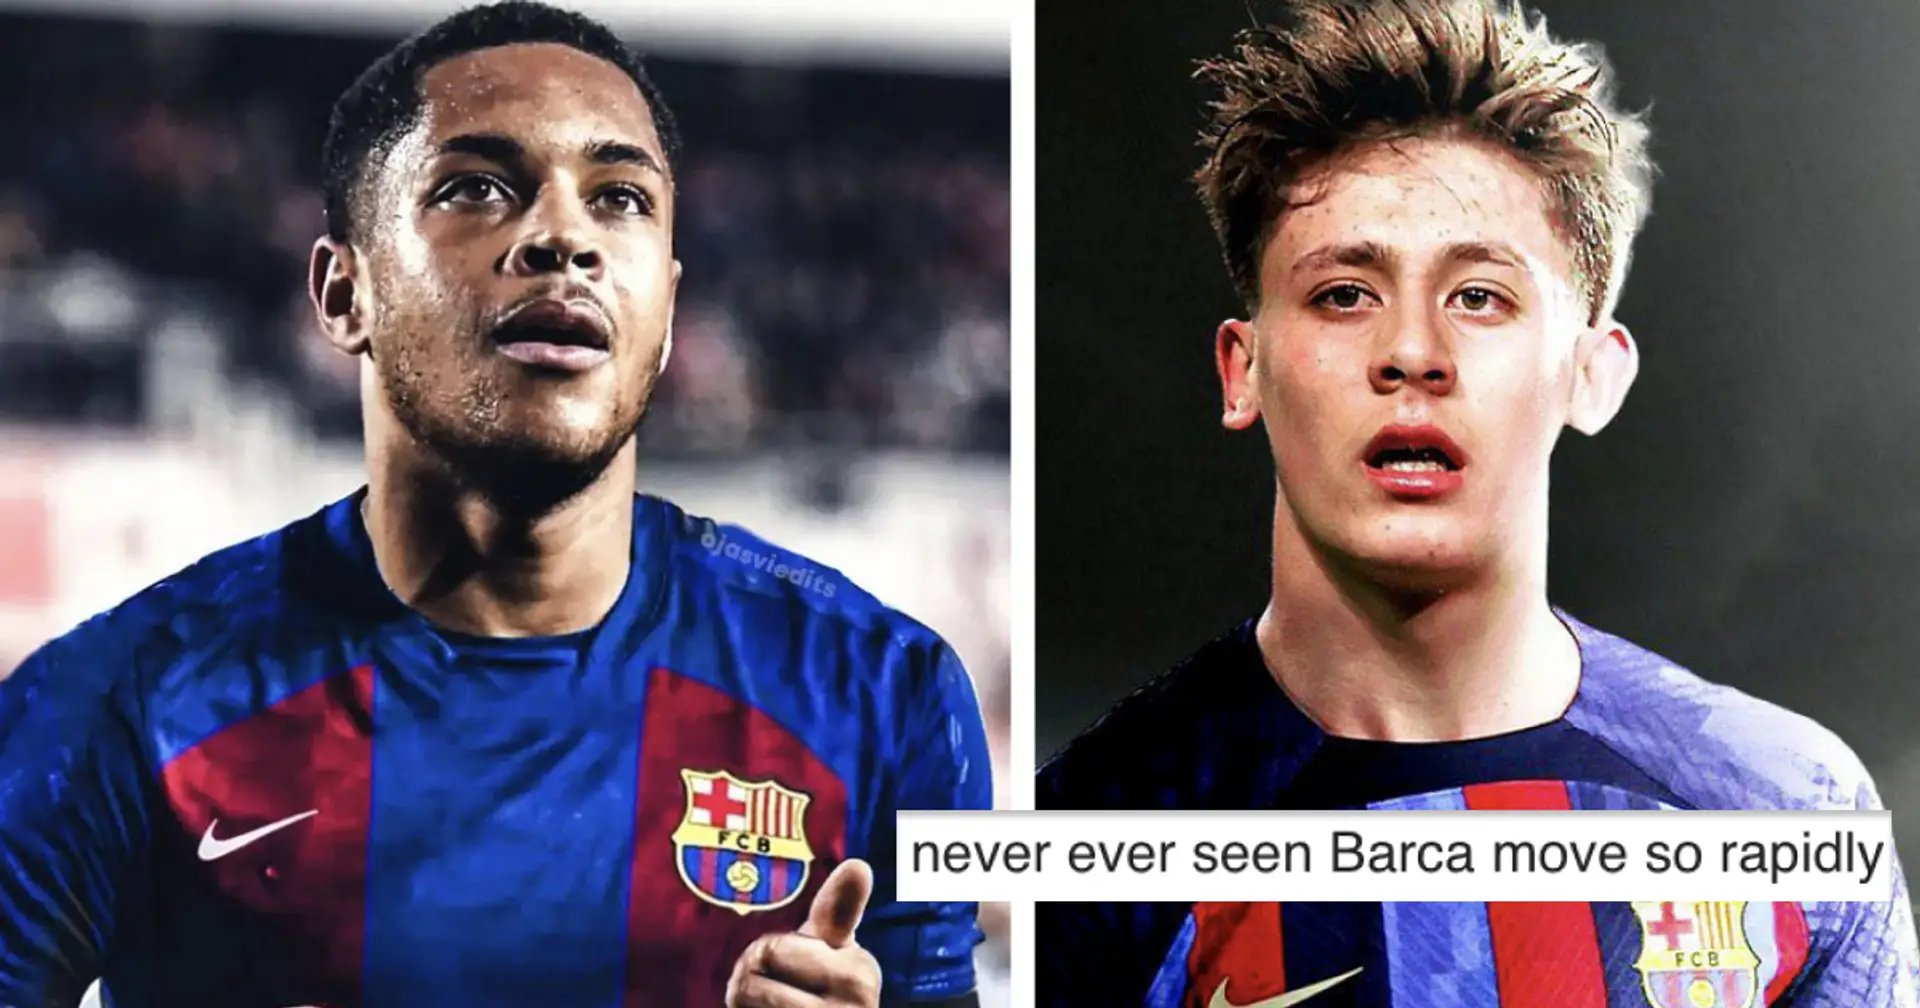 "L'une des meilleures choses qui nous soient arrivées": les fans pensent qu'un nouveau visage est à l'origine de l'activité de transfert rapide du Barca